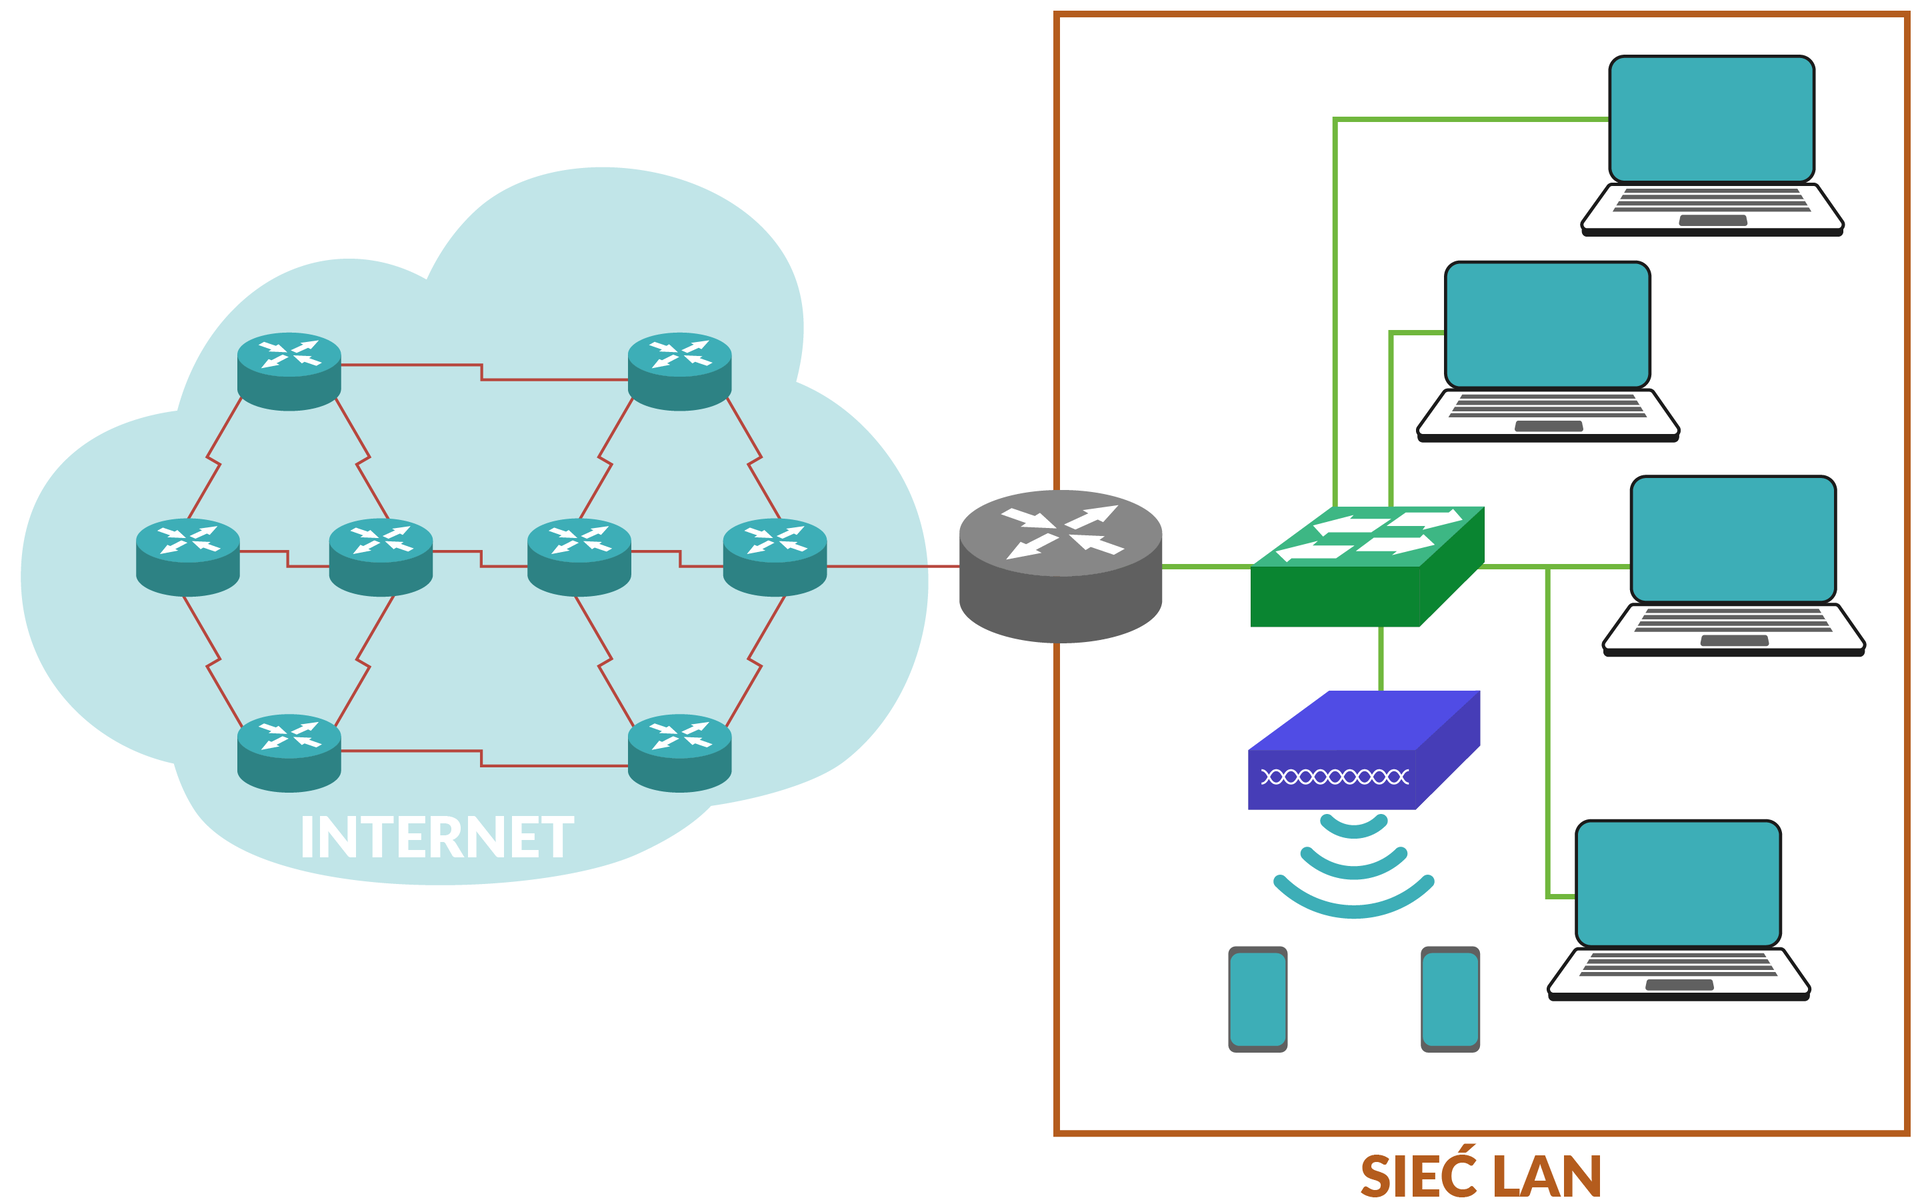 Ilustracja przedstawia topologię sieci.  W chmurze podpisanej jako internet znajduje się osiem ruterów połączonych łamanymi, czerwonymi liniami .  Następnie od chmury wychodzi prosta dążąca do bloku podpisanego jako sieć LAN zaczynającej się od rutera.  Następnie ruter połączony jest  z przełącznikiem sieciowym.  Przełącznik łączy się z punktem dostępowym oraz z czterema komputerami.  Dwa telefony połączone są bezprzewodowo z  punktem dostępowym.